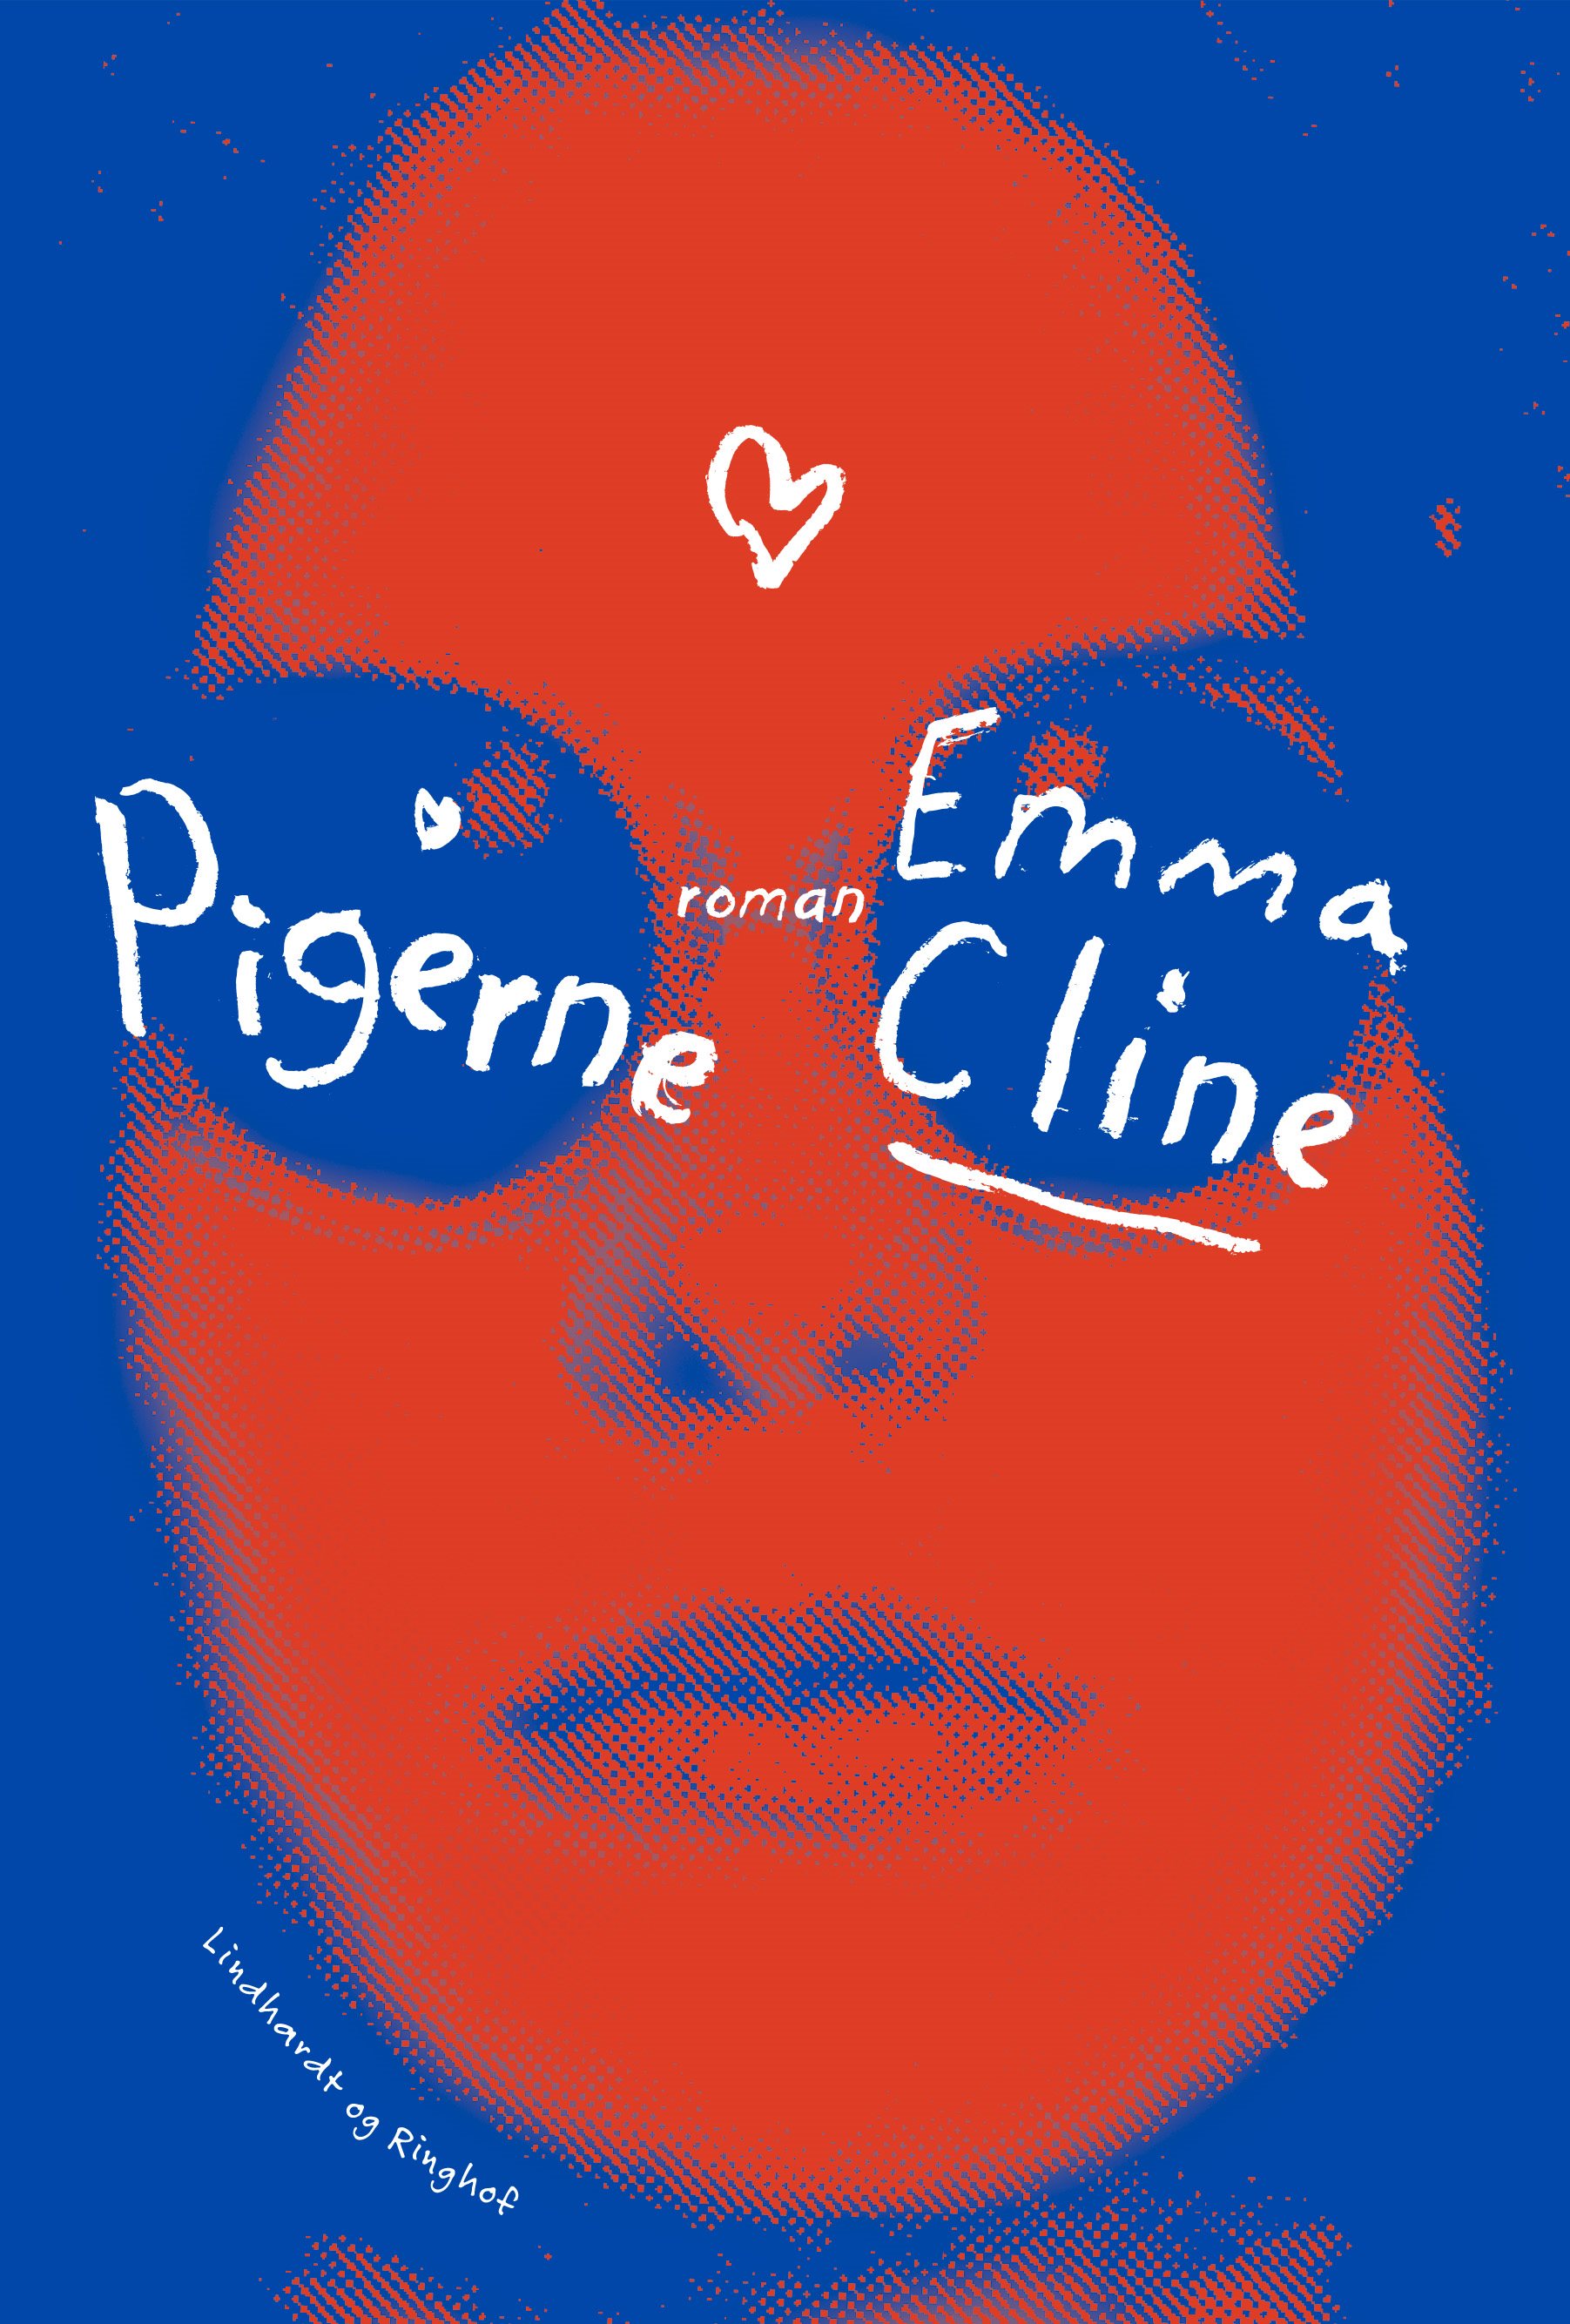 Emma Cline, Pigerne, teenage, YA, Young Adult, Kult, Ungdomsbog, Coming of age story, gruppedynamik